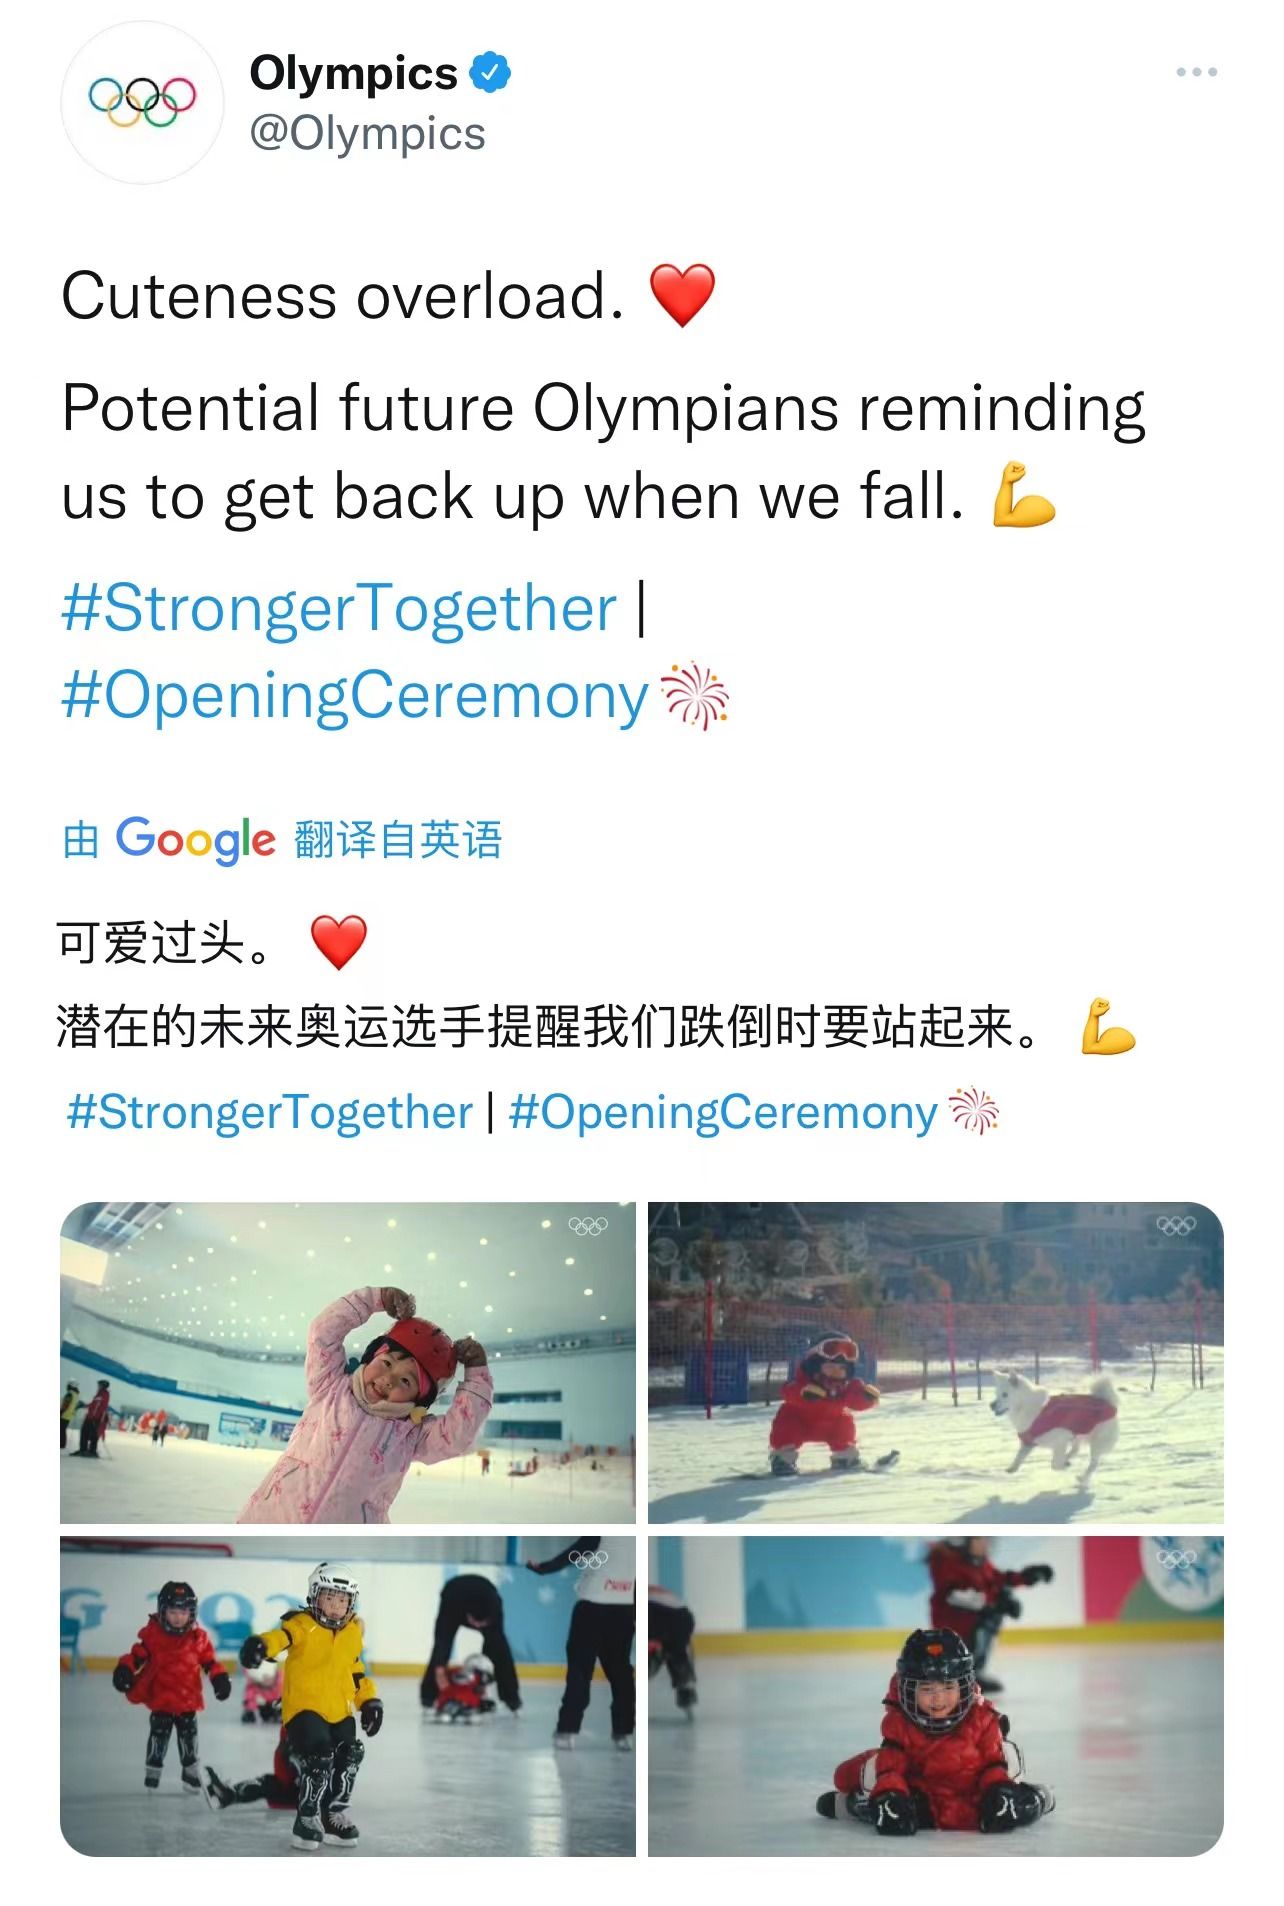 人人都爱萌娃 国外人士大赞孩子们是冬奥会开幕式“高光时刻”|北京冬奥会| 希腊语